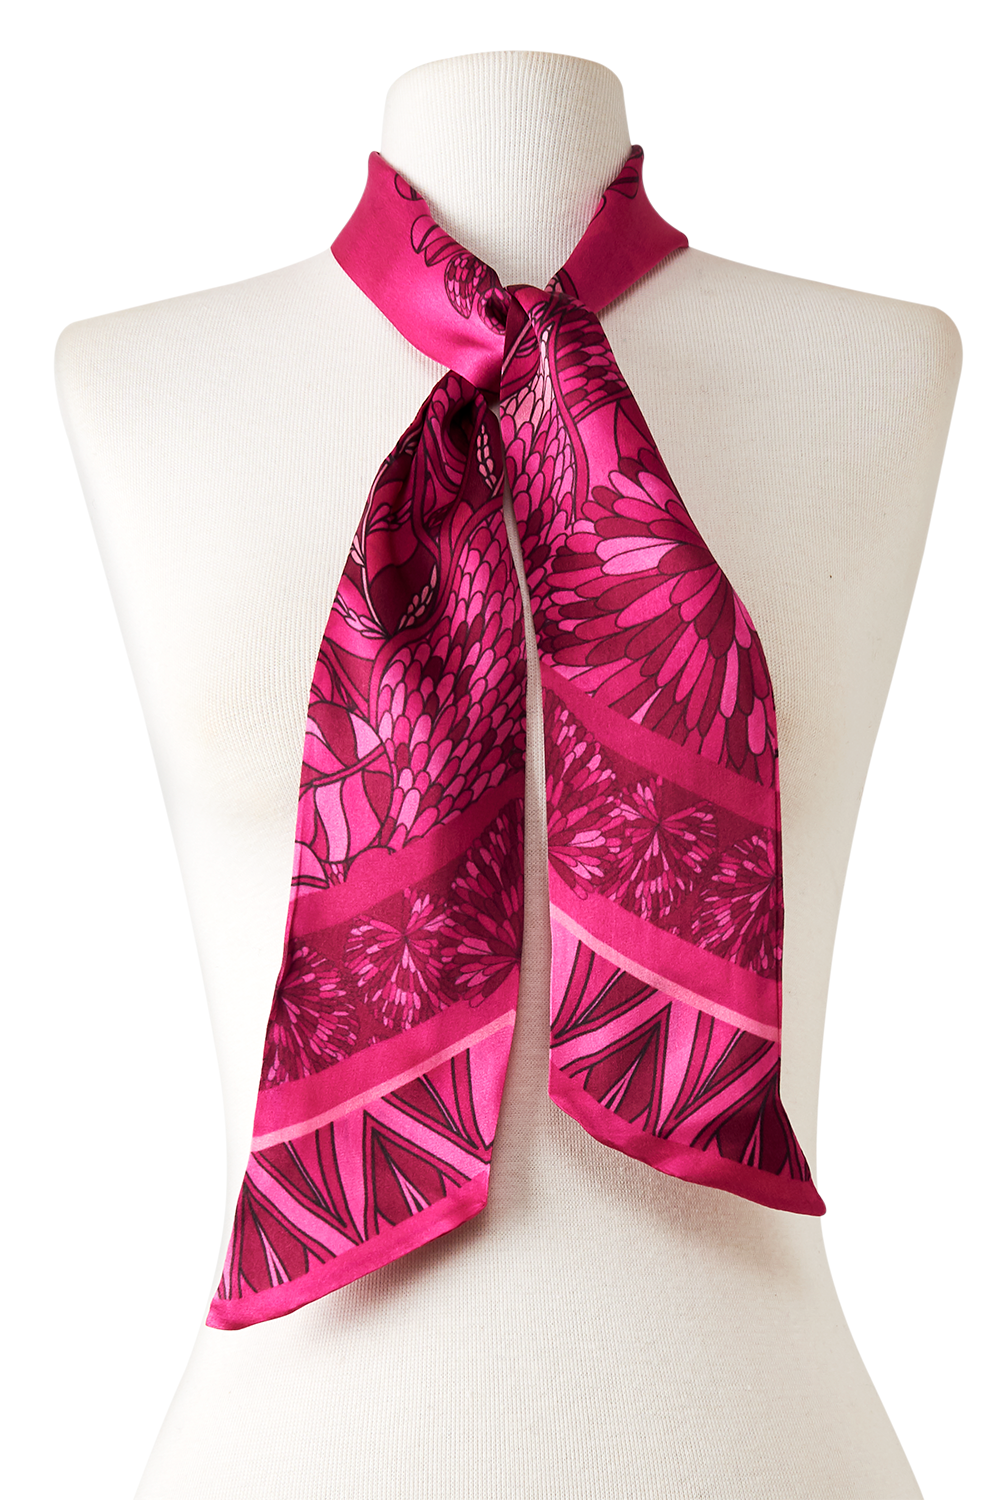 Twilly Ramos de Púrpura pink em cetim de seda | 8x130cm